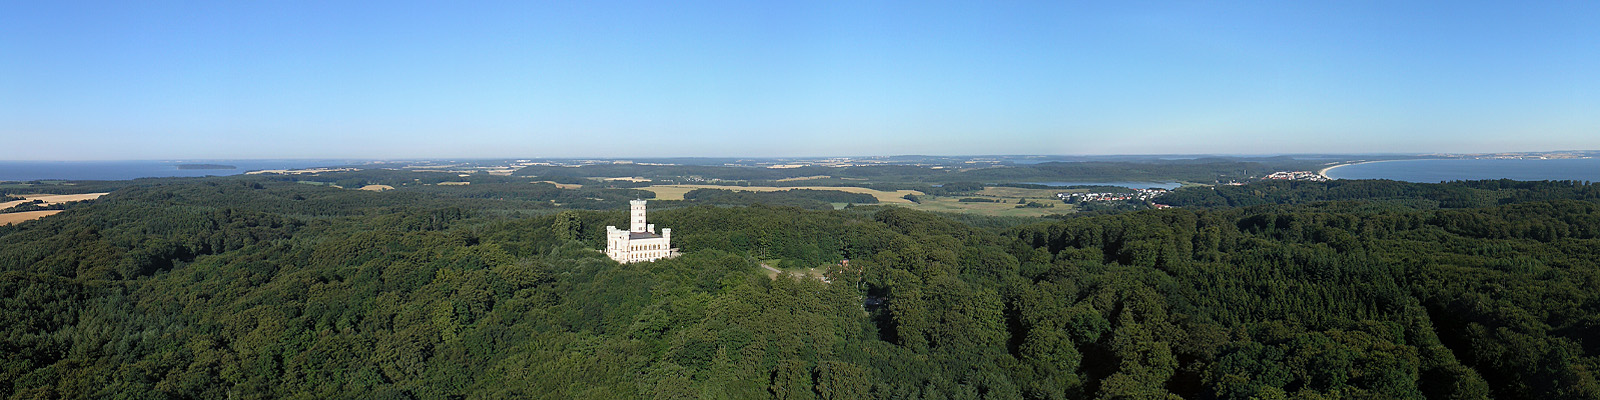 Panorama: Jagdschloss Granitz Luftbild - Motivnummer: rug-gra-100